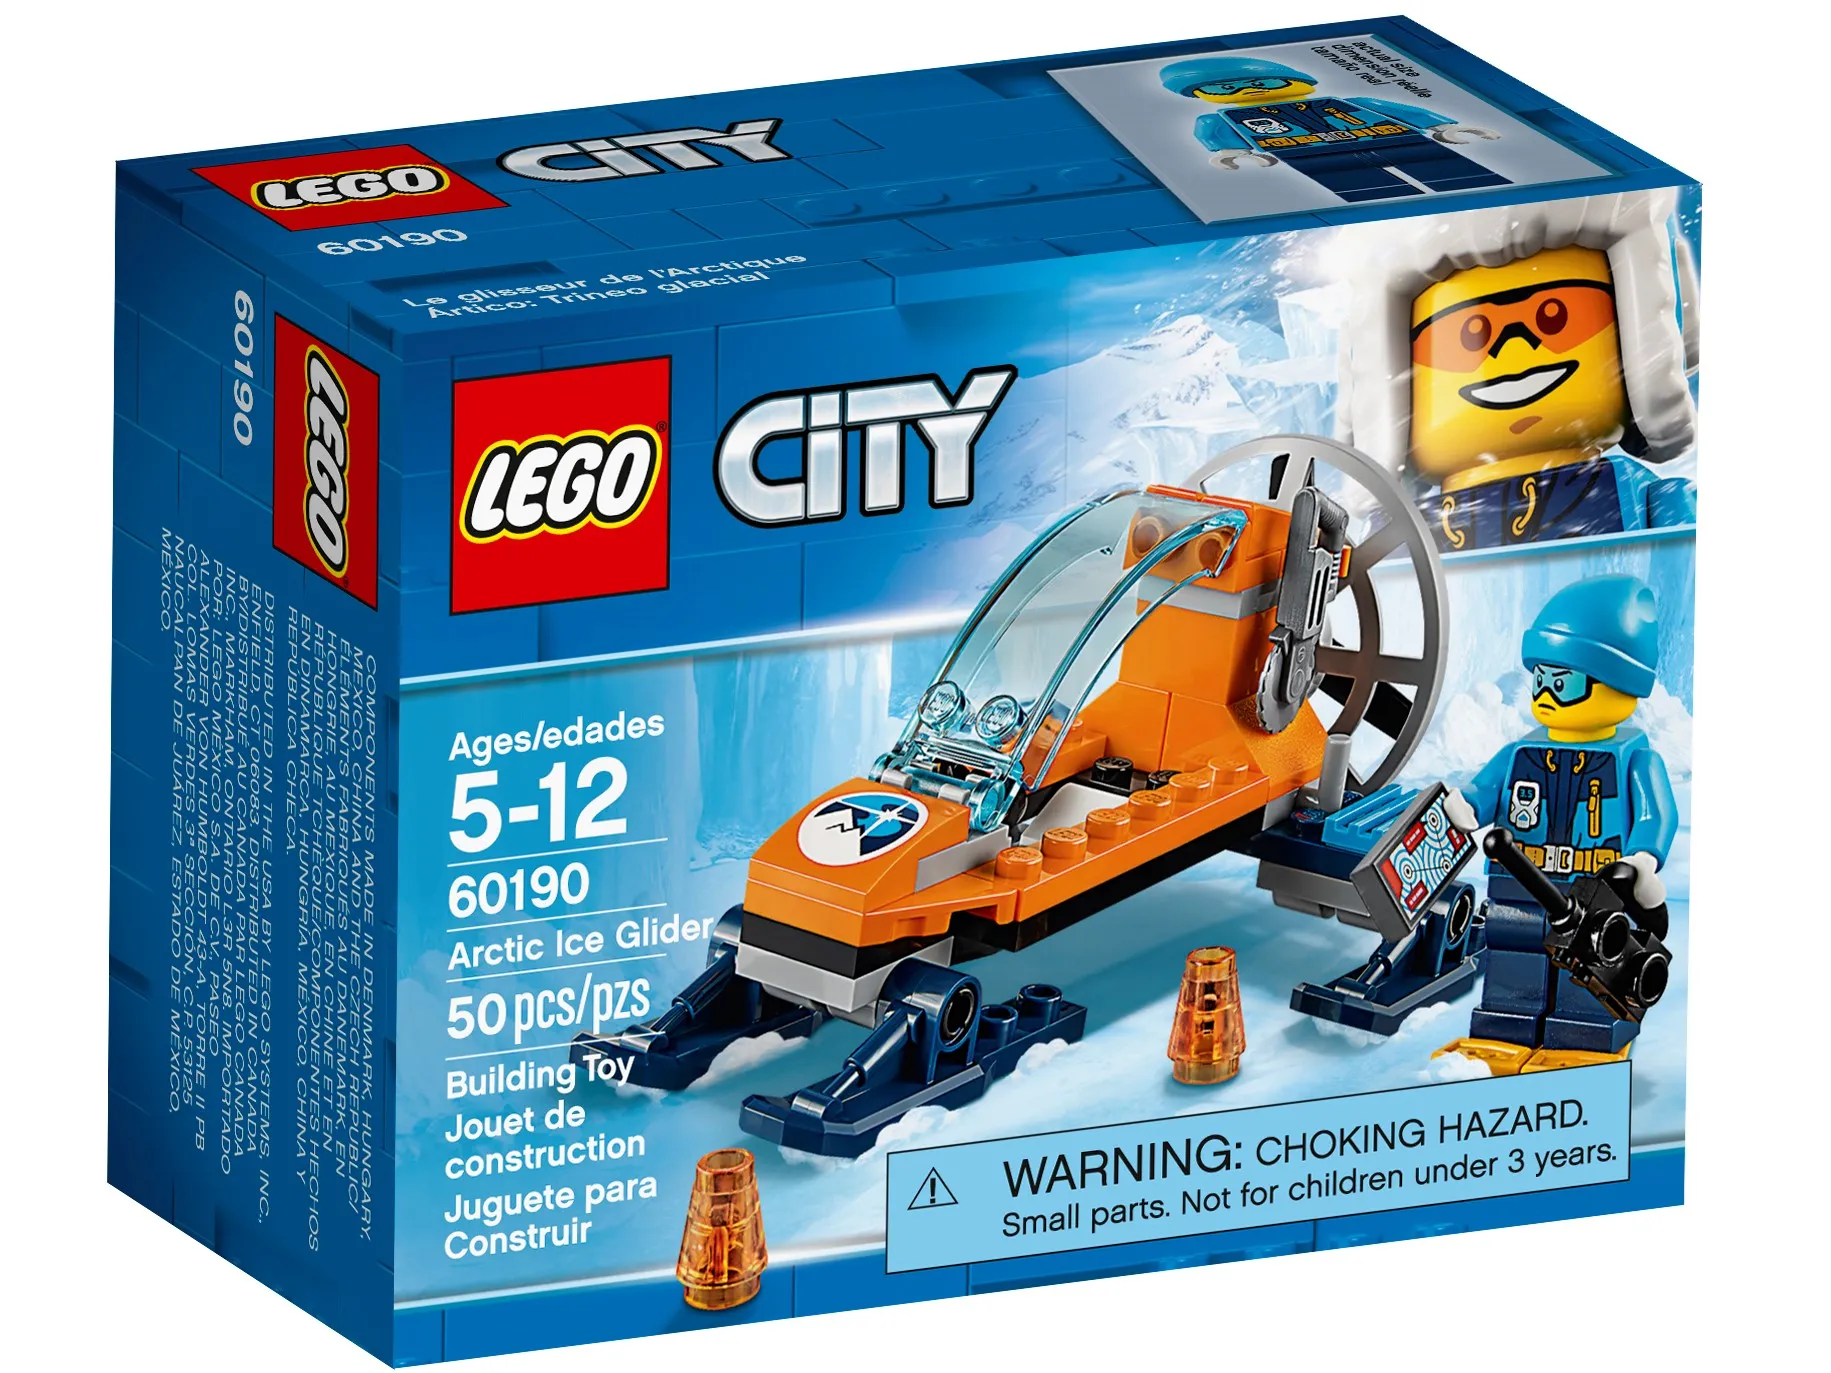 LEGO City Switch Tracks • Set 60238 • SetDB • Merlins Bricks